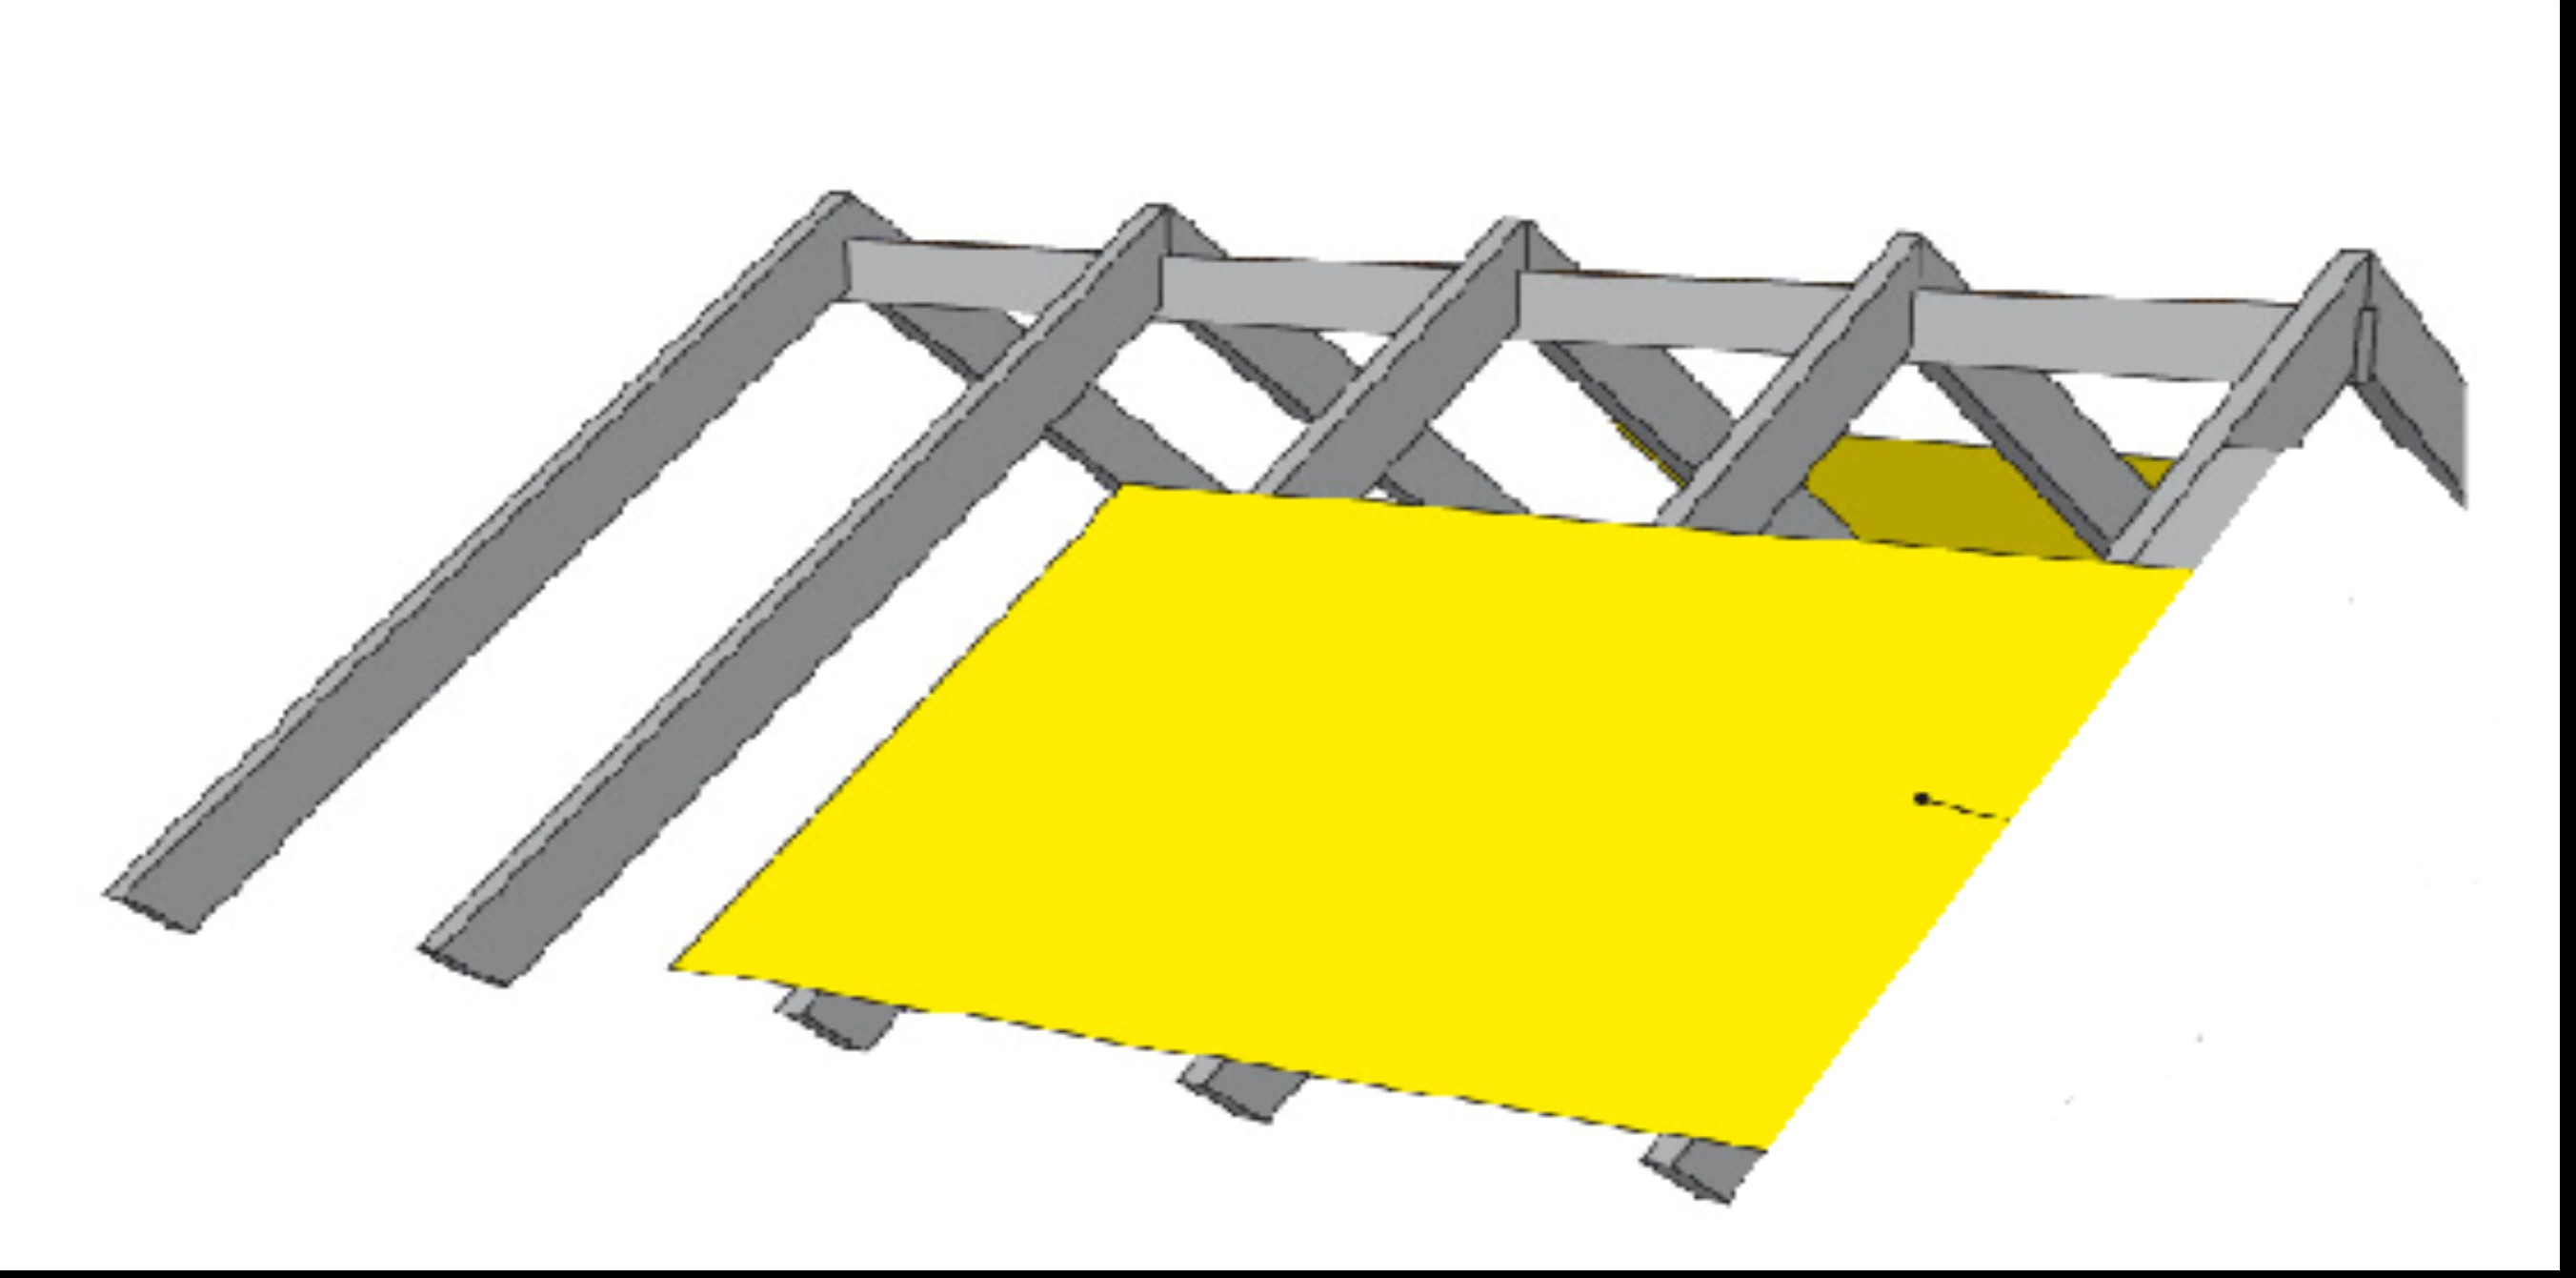 Folia dachowa Folię dachową należy ułożyć poziomo na krokwiach od okapu w kierunku kalenicy i zamocować za pomocą zszywek tak aby była lekko naprężona.